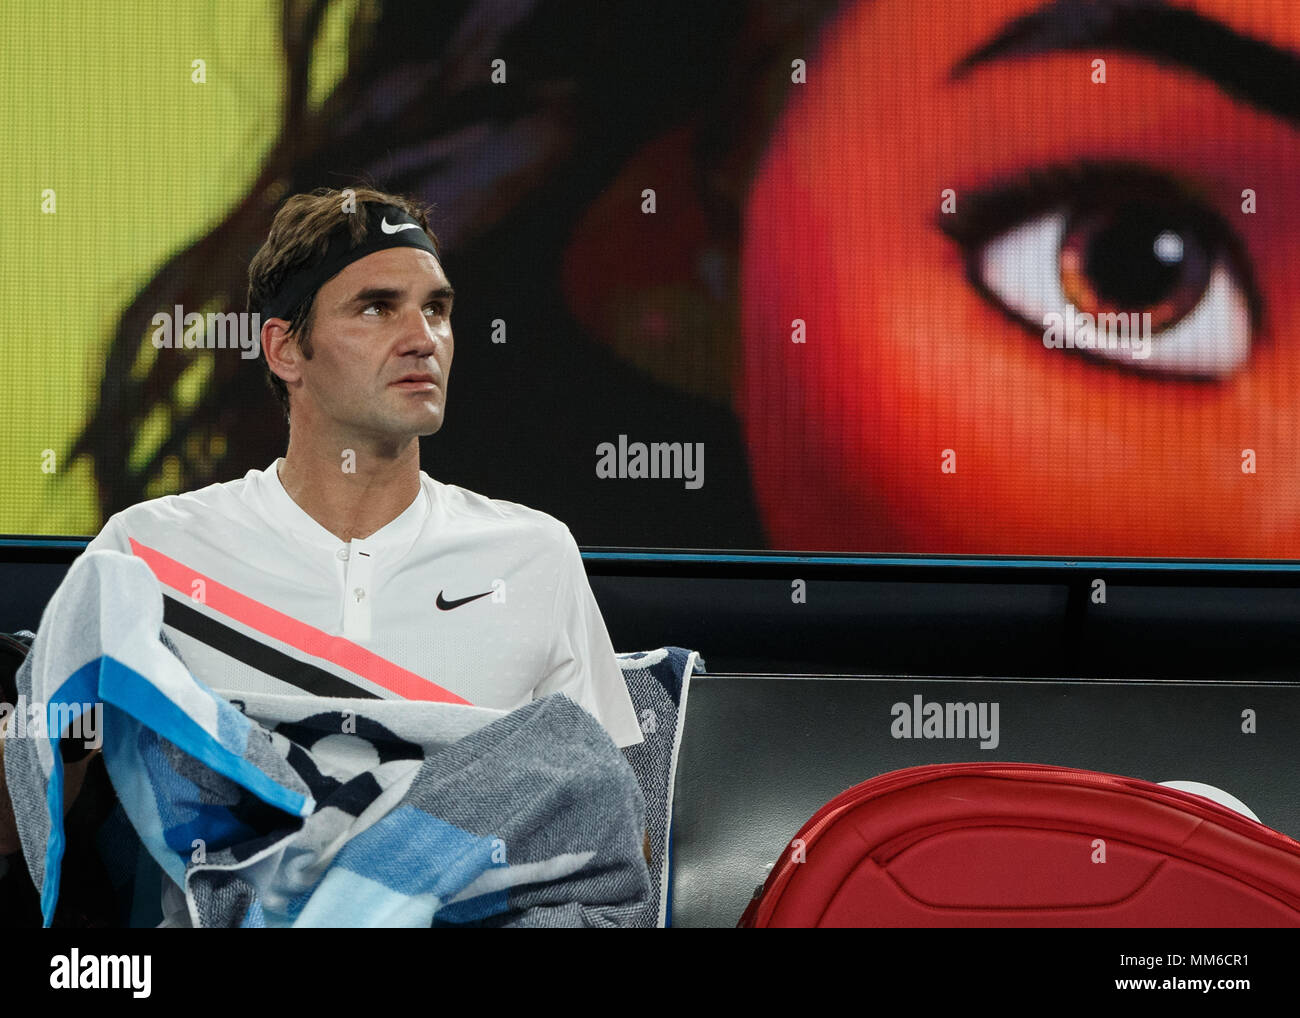 Swiss giocatore di tennis Roger Federer seduta sul banco durante la pausa in Australian Open 2018 Torneo di Tennis, Melbourne Park, Melbourne, Victoria, Au Foto Stock